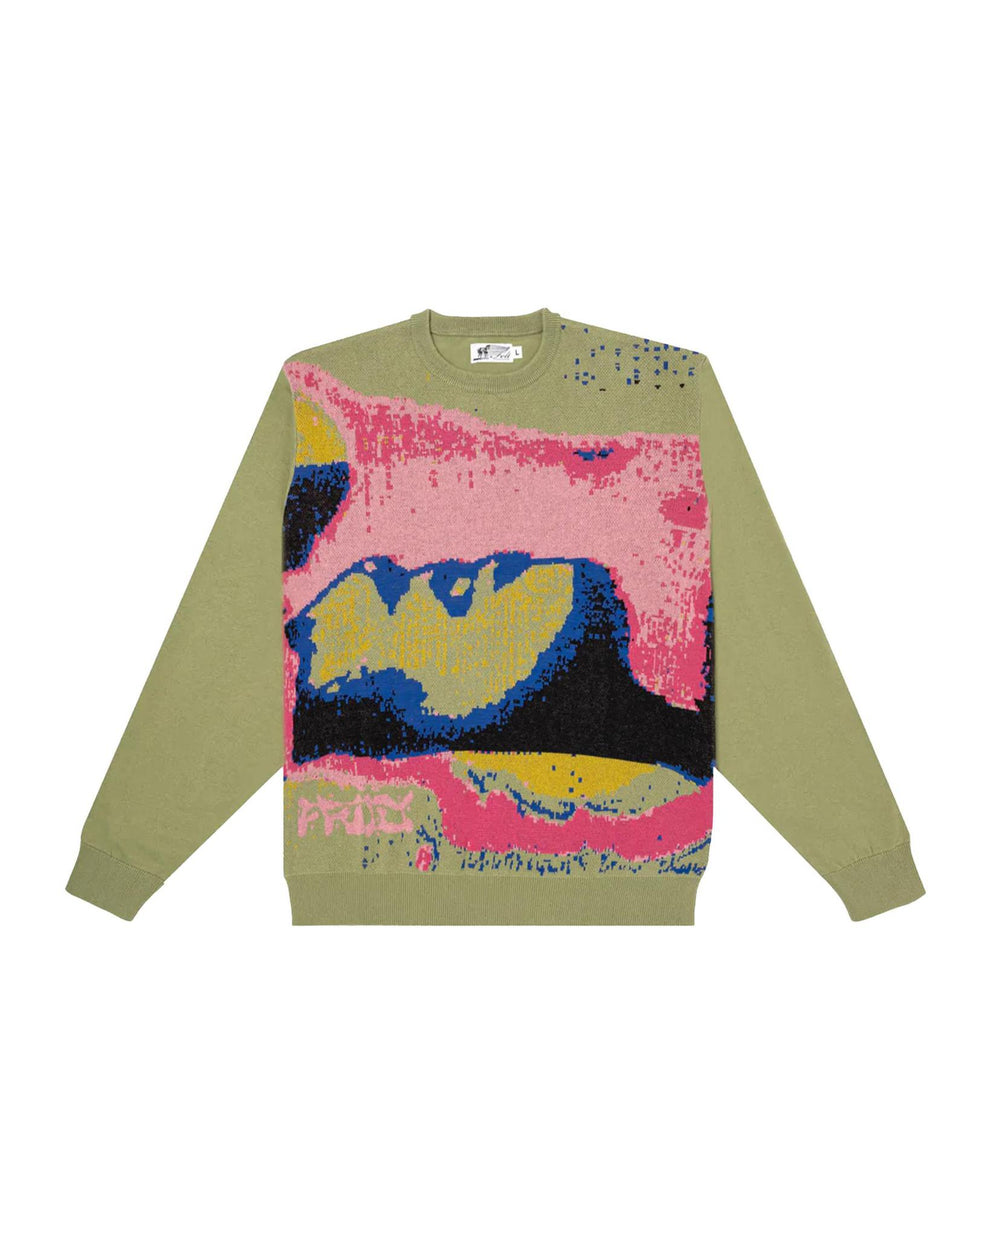 FENDI wool sweater  Black  Fendi sweater FZX005AN3Z online on GIGLIOCOM